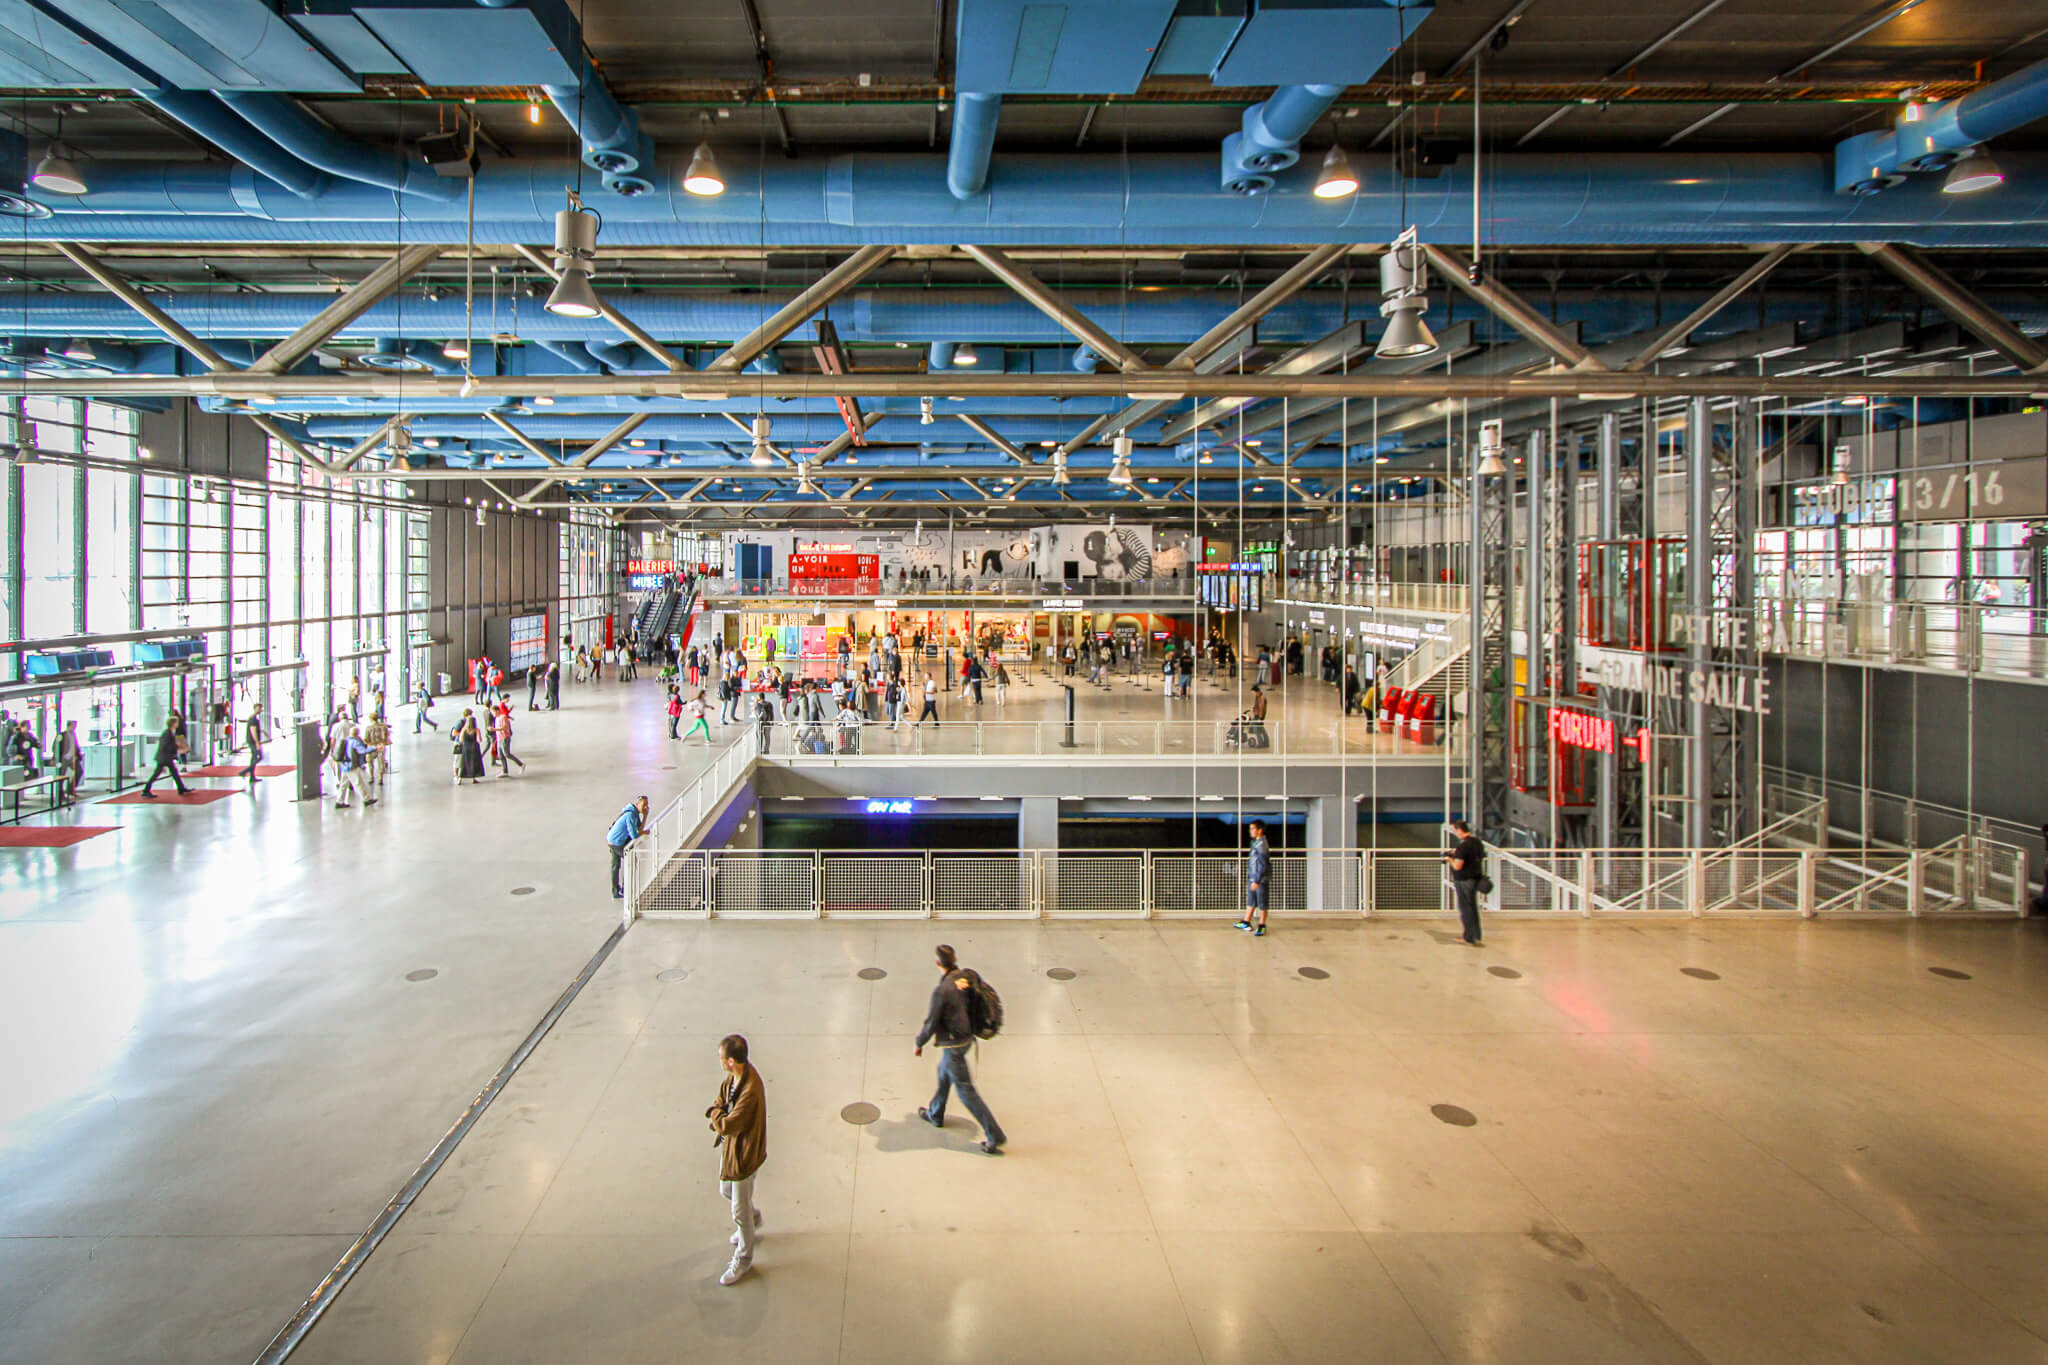 The interior of Centre Pompidou in Paris